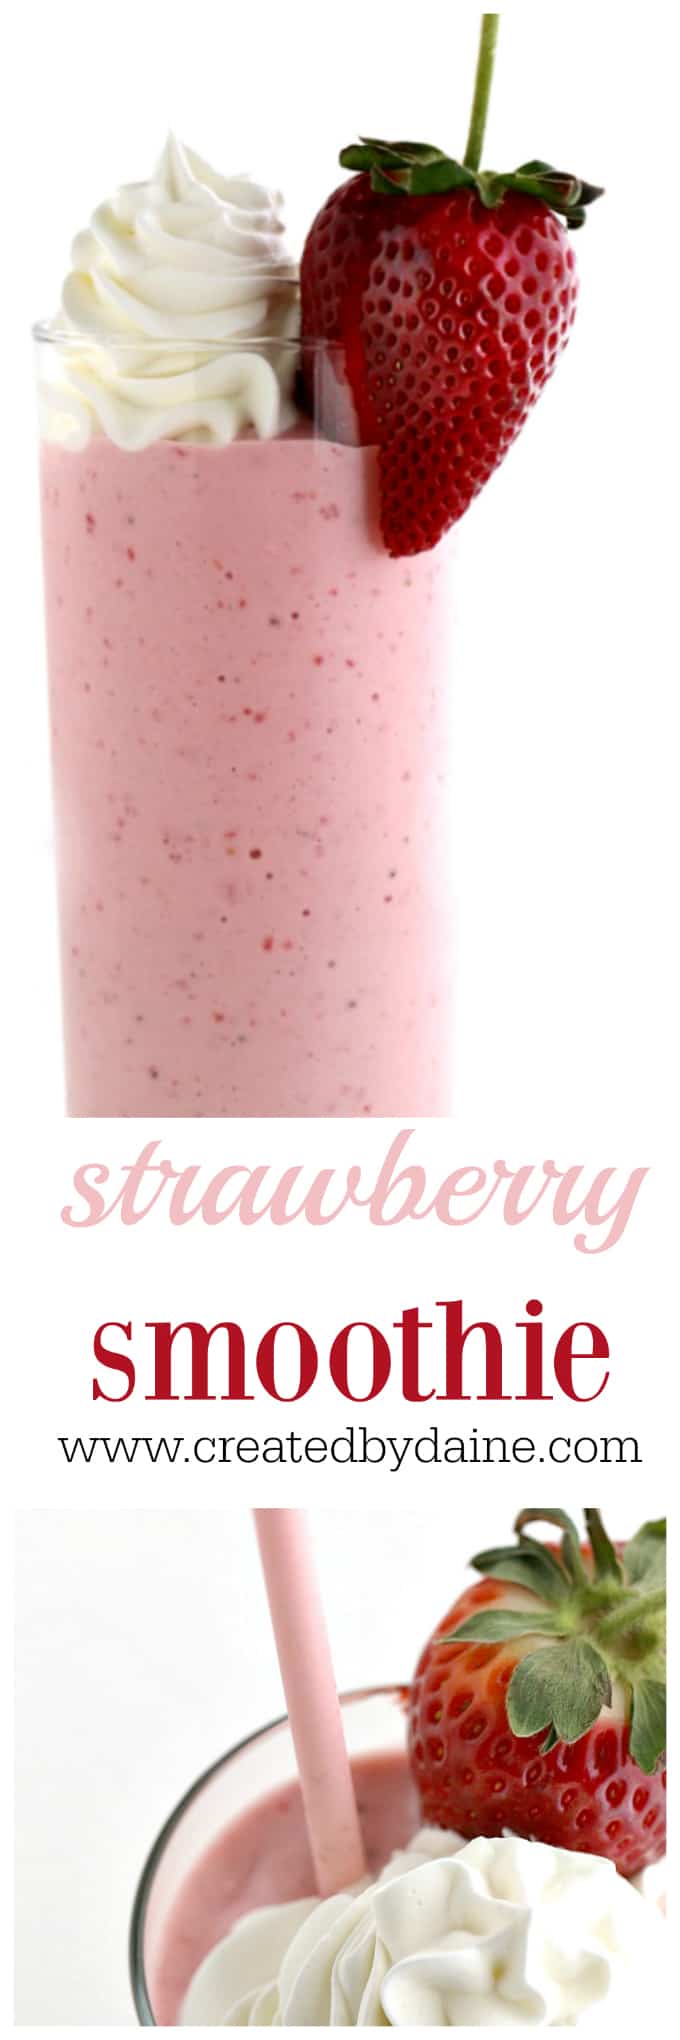 Strawberry Smoothie Recipe with Yogurt www.createdbydiane.com